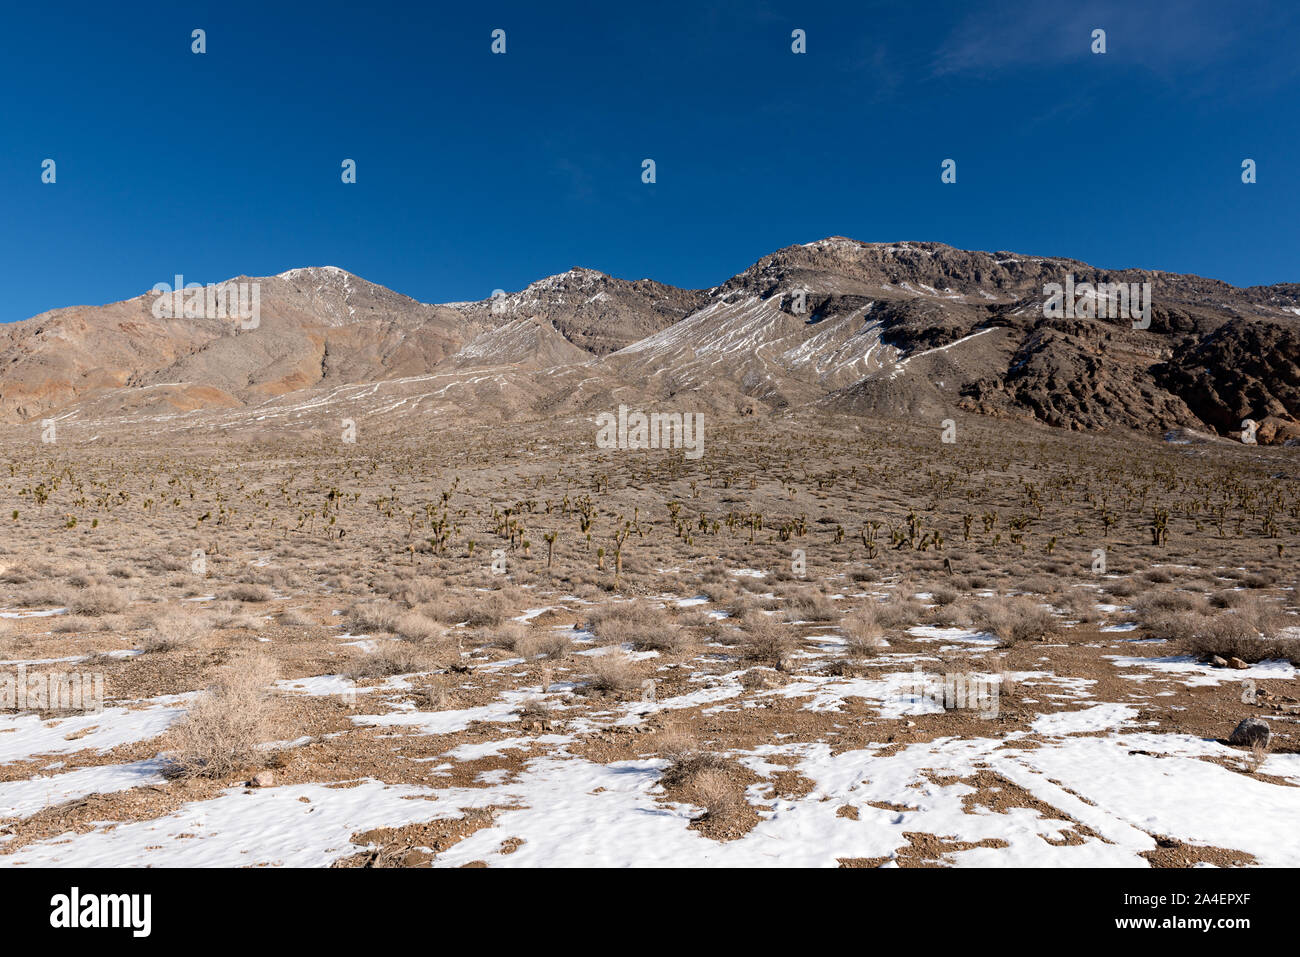 Dies ist offensichtlich nicht den stereotypischen Sonne - geröstete Sommertag im Death Valley. Schnee dots den Boden inmitten eines Feldes von Kakteen entlang der Sackgasse zu einem Playa als Rennstrecke, ein trockener lakebed für seine Felsen, die auf mysteriöse Weise bewegen bekannt, von Zeit zu Zeit, entlang der Oberfläche Stockfoto